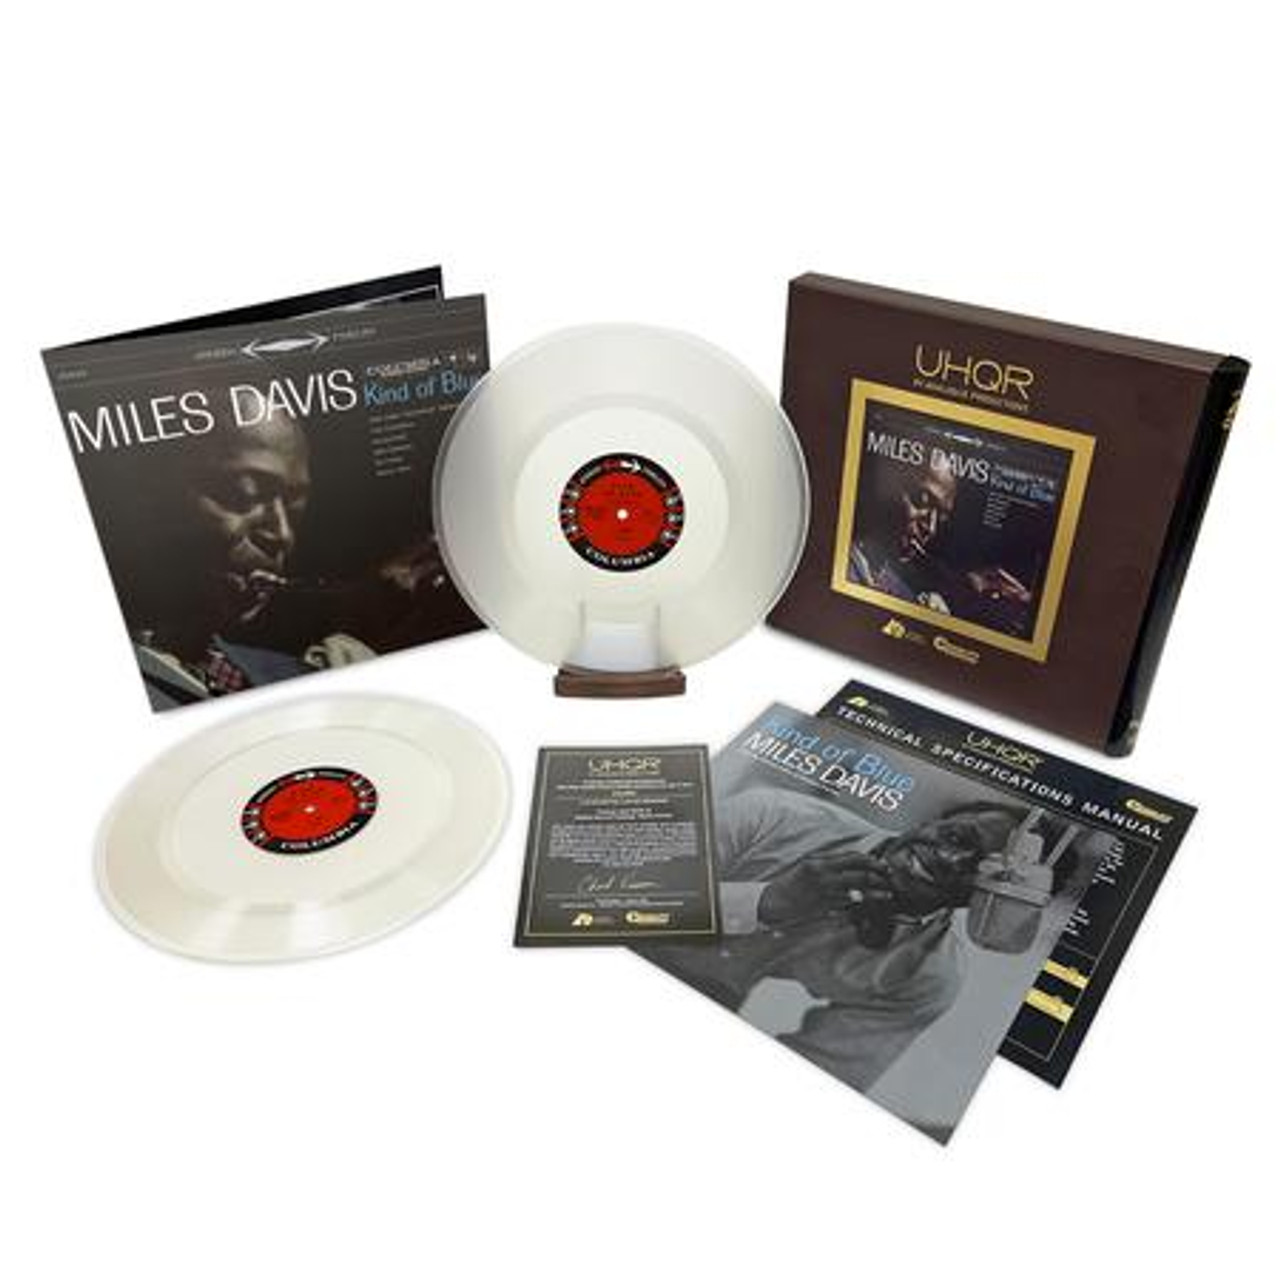 Miles Davis - Kind of Blue (UHQR 200g 45RPM Clarity Vinyl 2LP